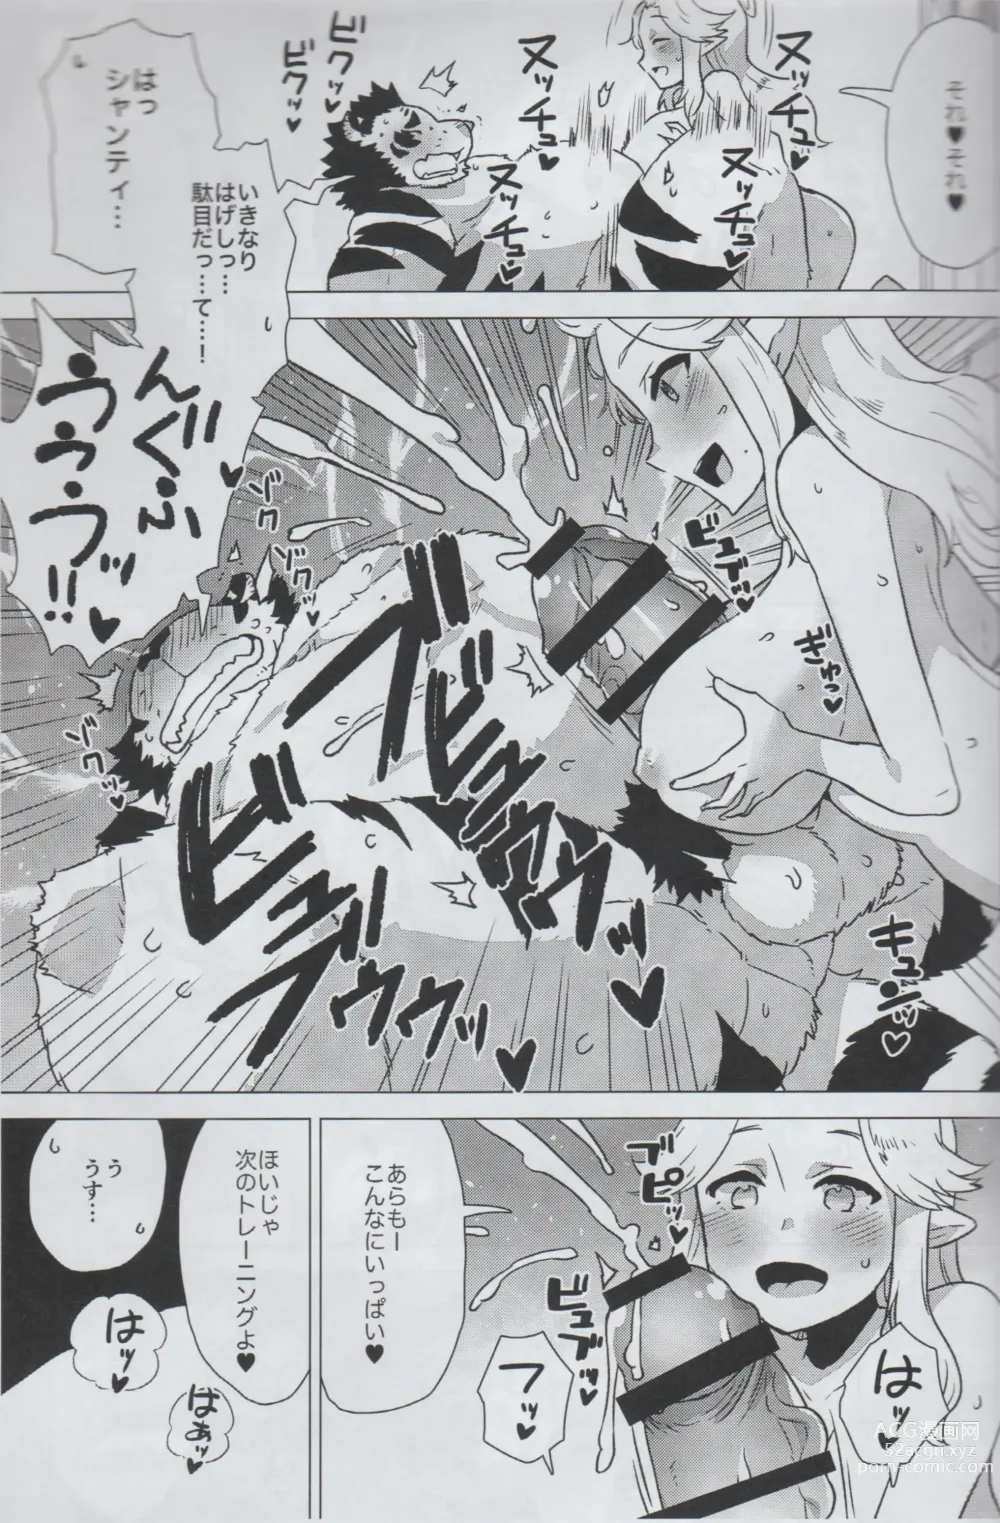 Page 10 of doujinshi Mihoshi Ginza Shopping Street Kaihoushi vol. 05